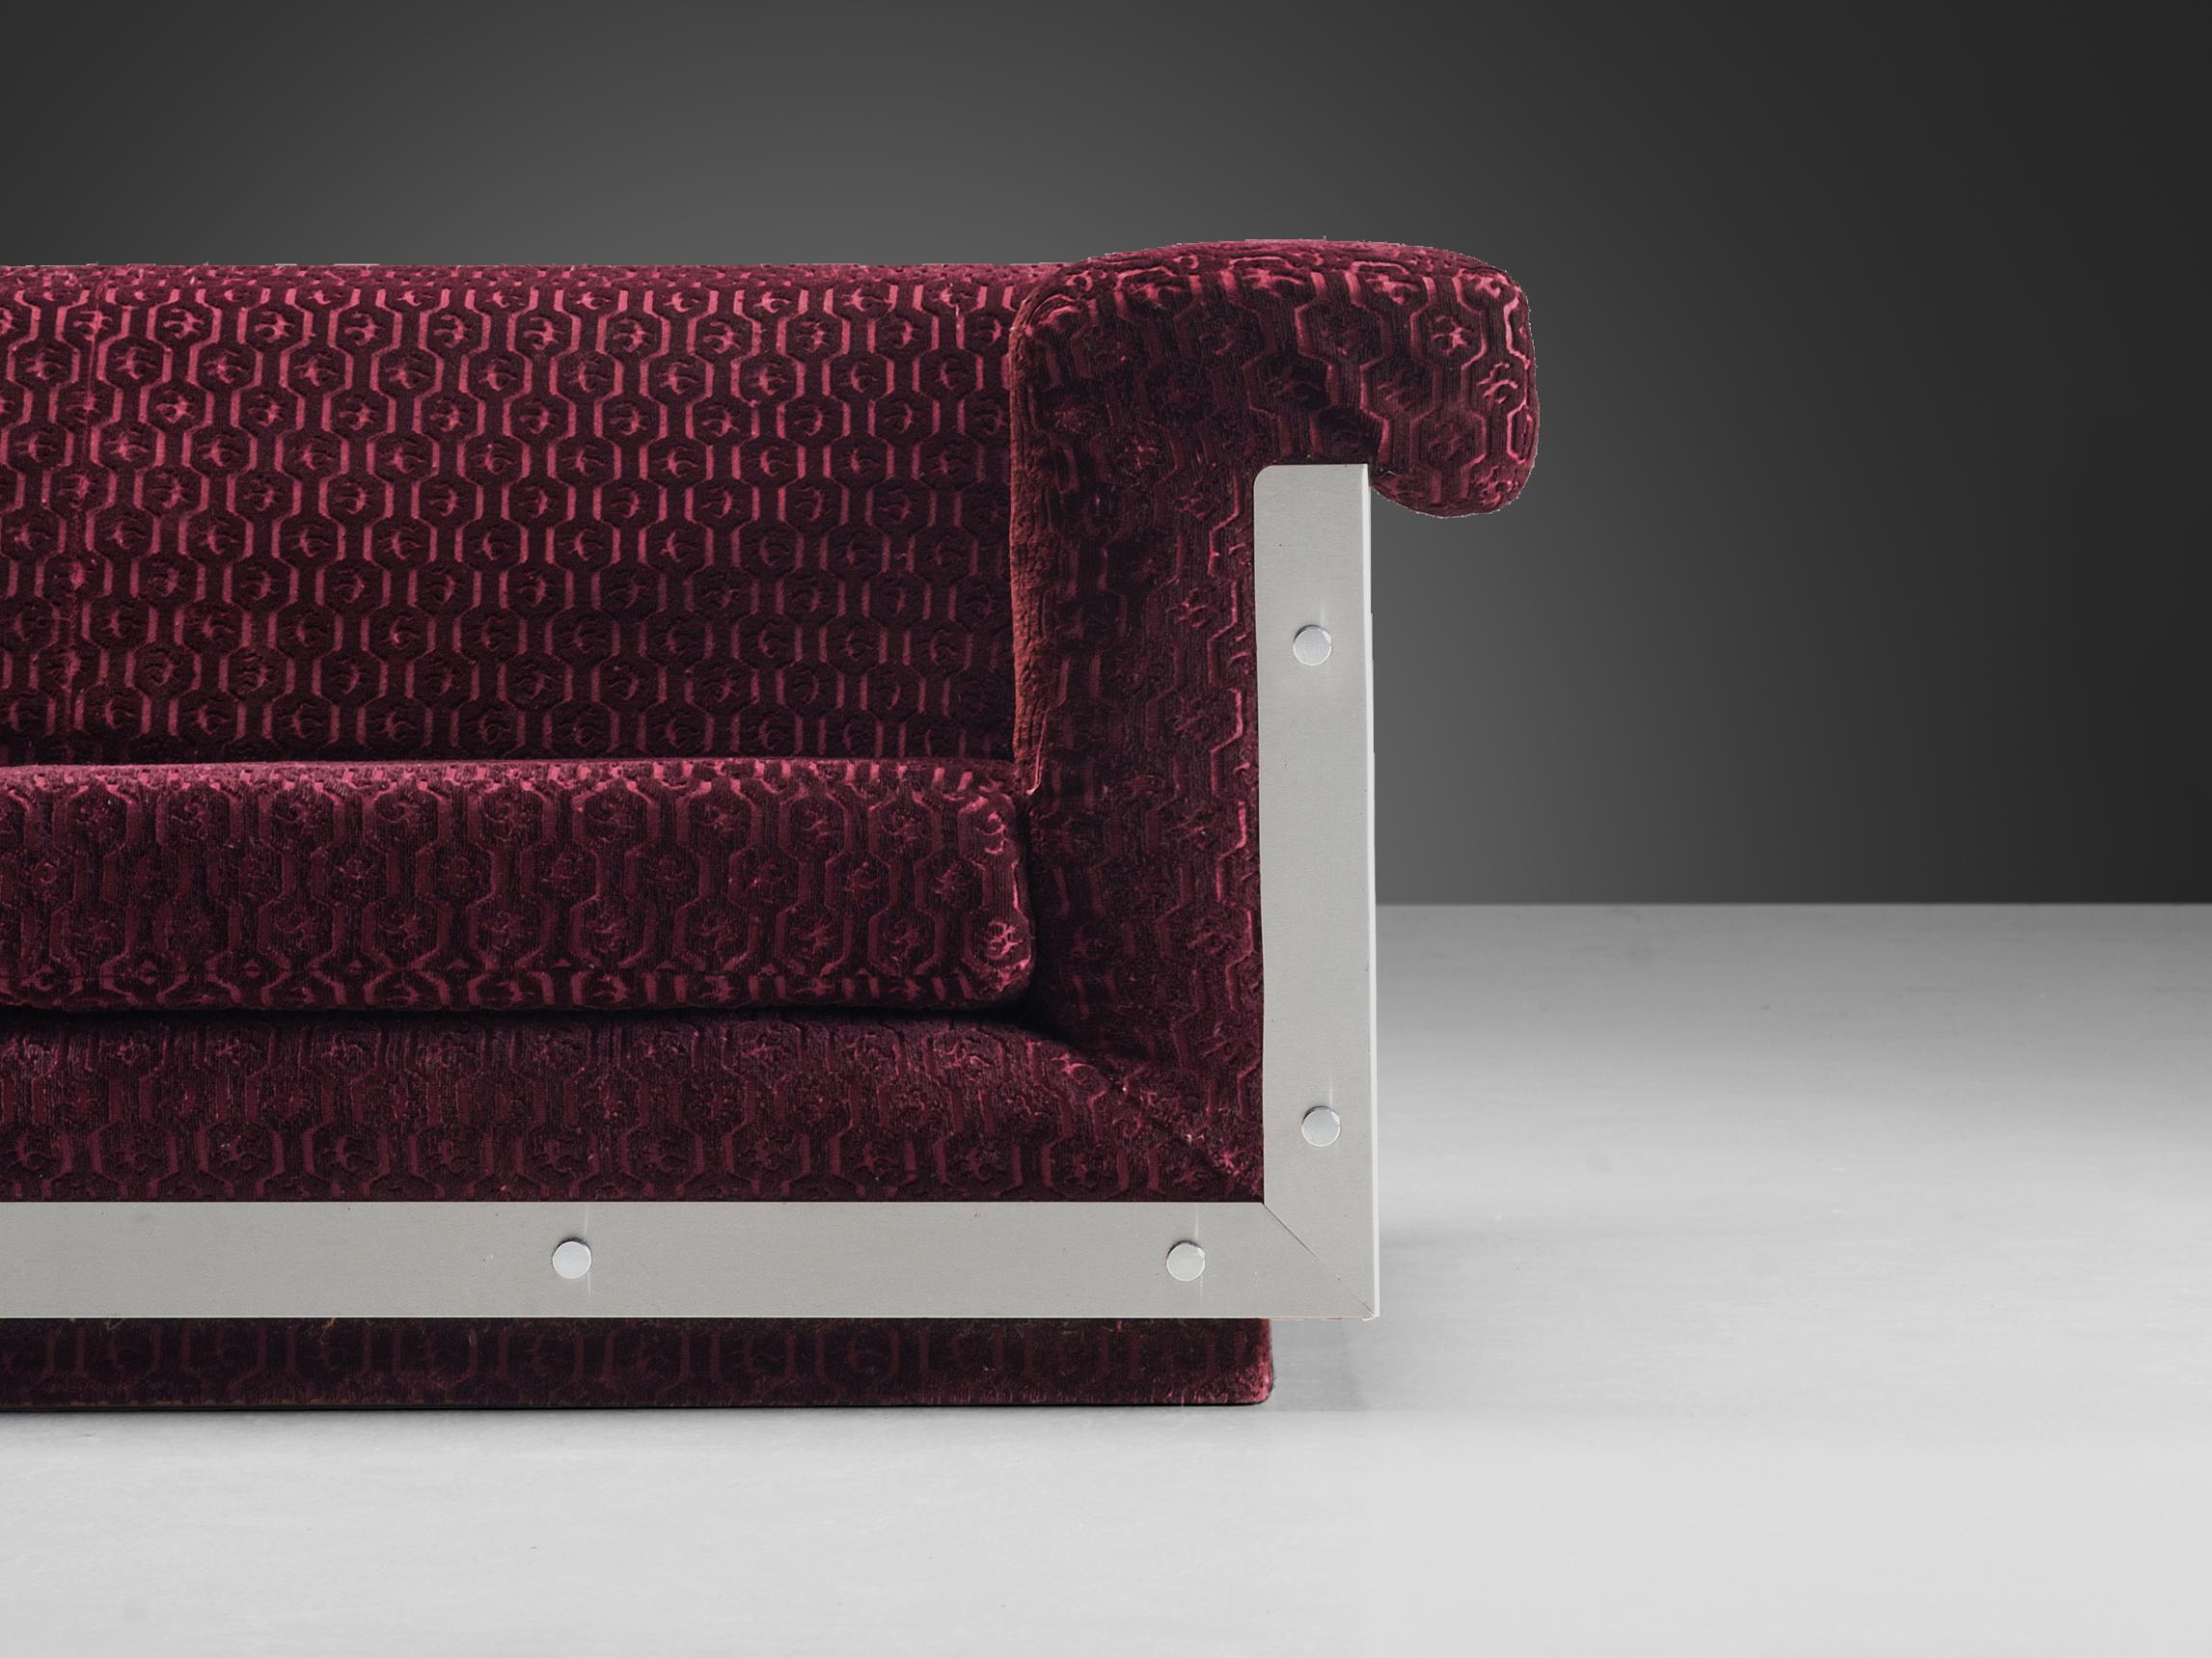 Postmodern French Sofa in Stainless Steel and Burgundy Velvet Upholstery  2